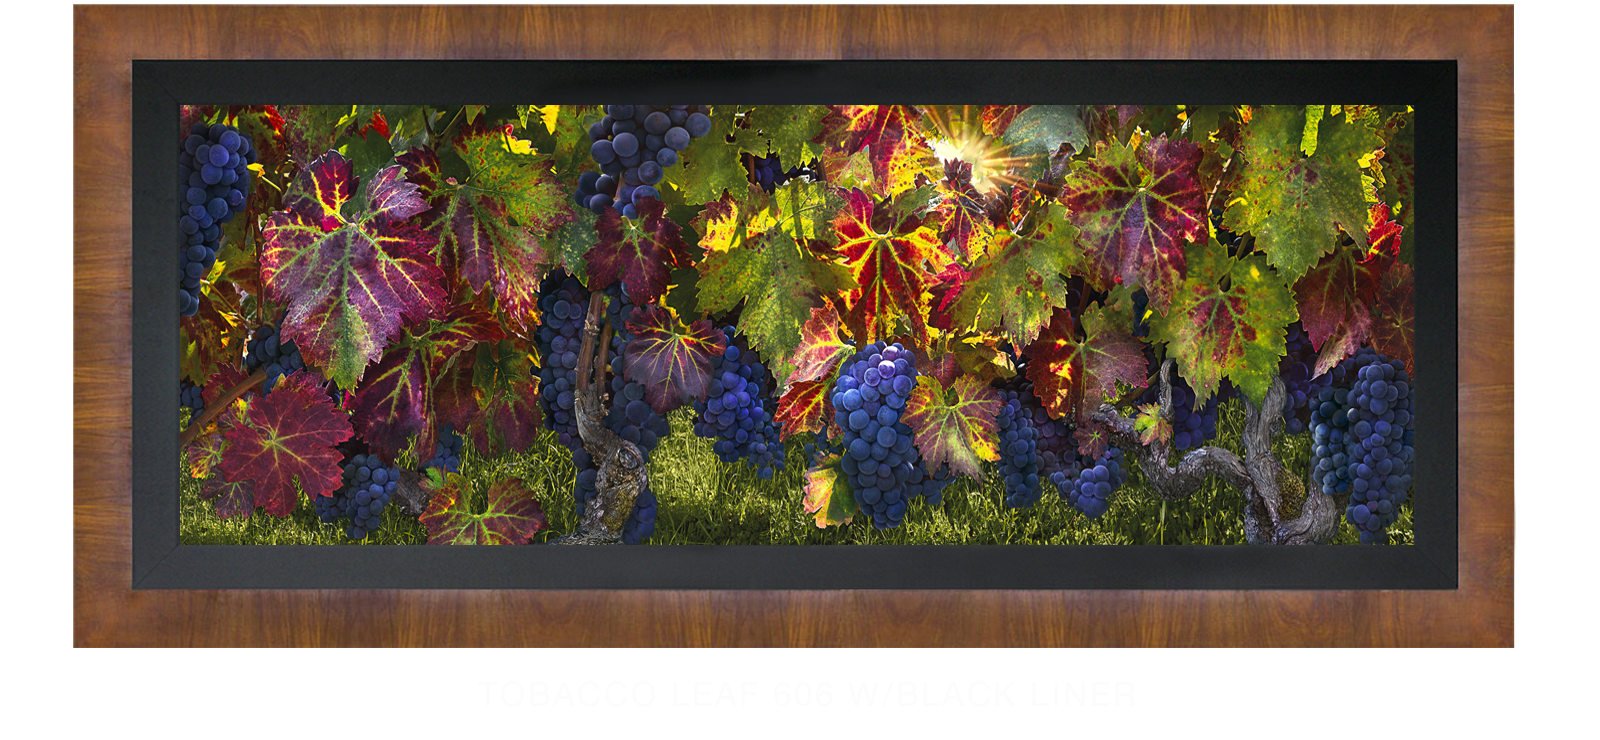 23CATHEDRALI VITIS Tobacco Leaf 606 w_Blk Liner T2